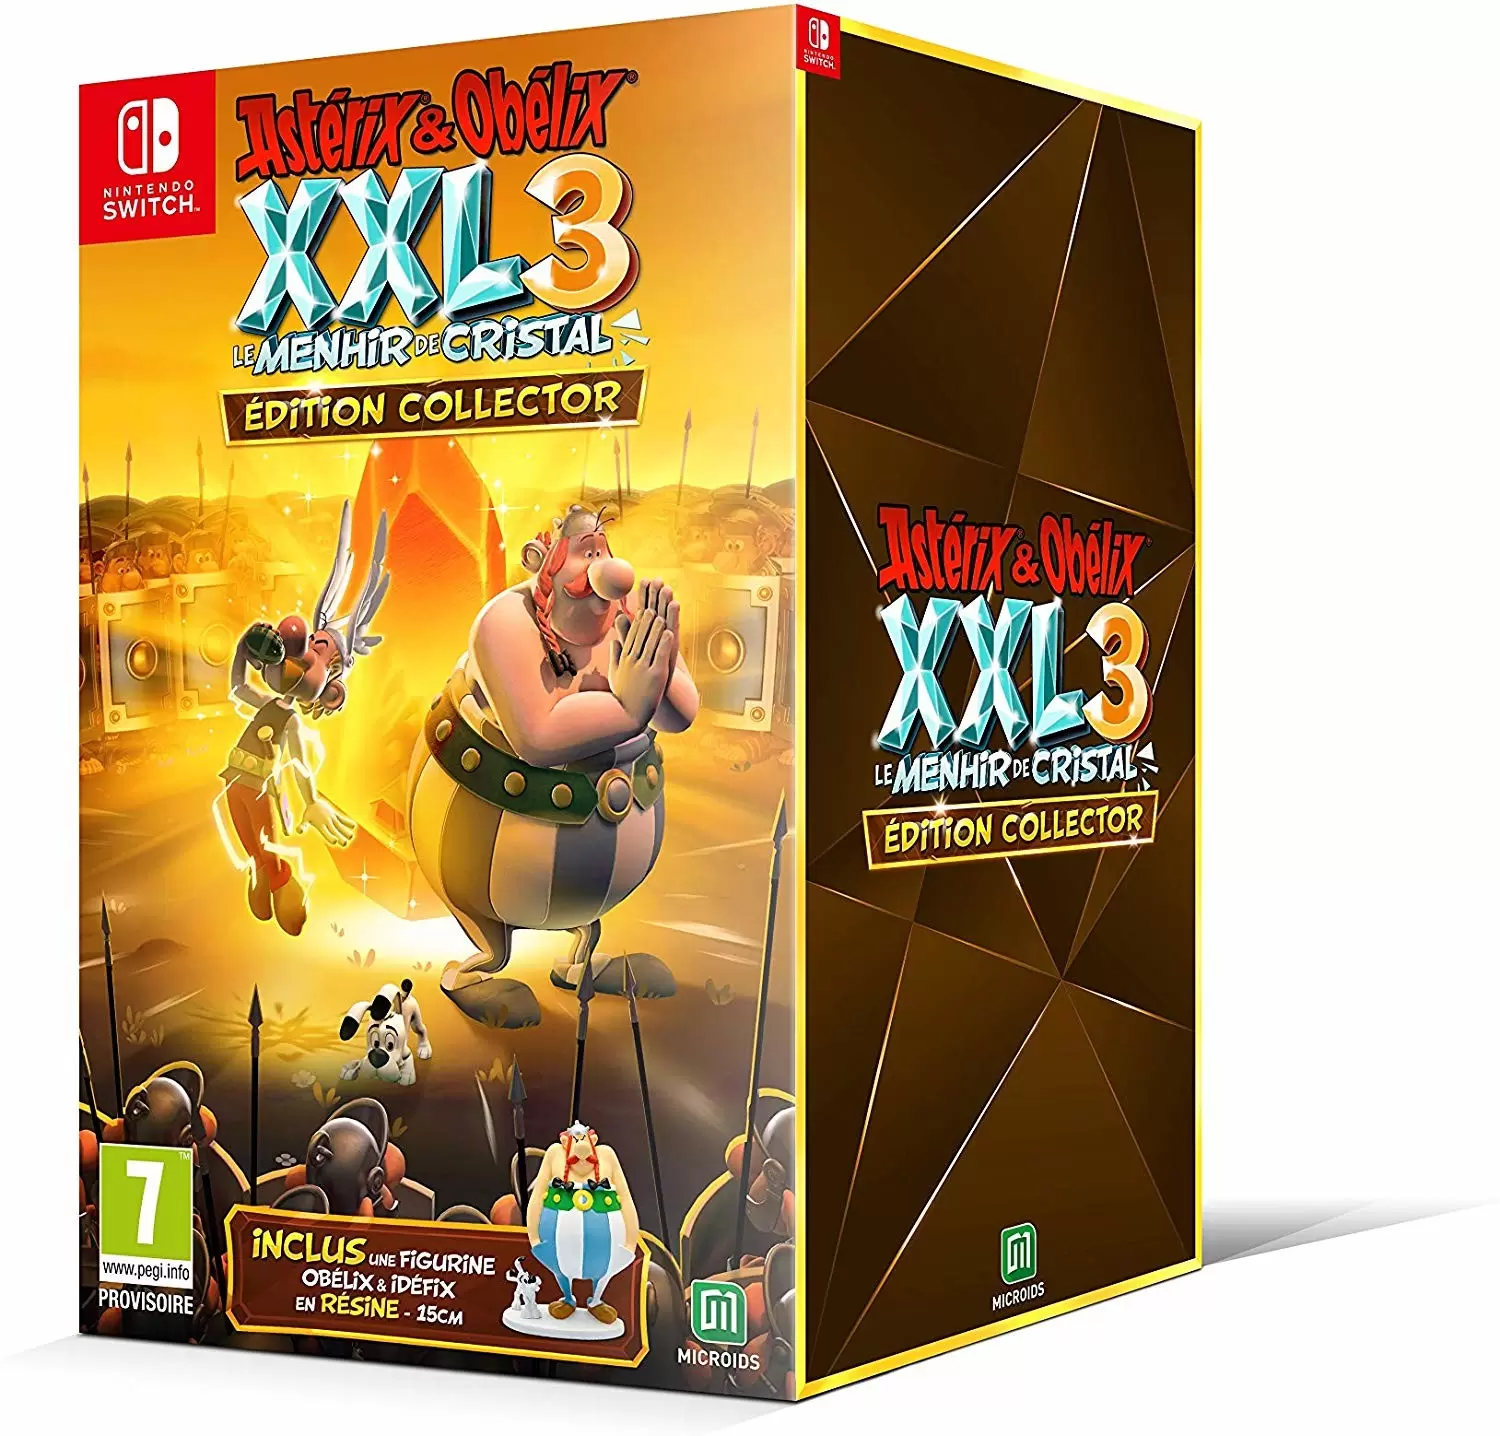 Jeux Nintendo Switch - Astérix & Obelix XXL 3 : Le Menhir De Cristal Edition Collector